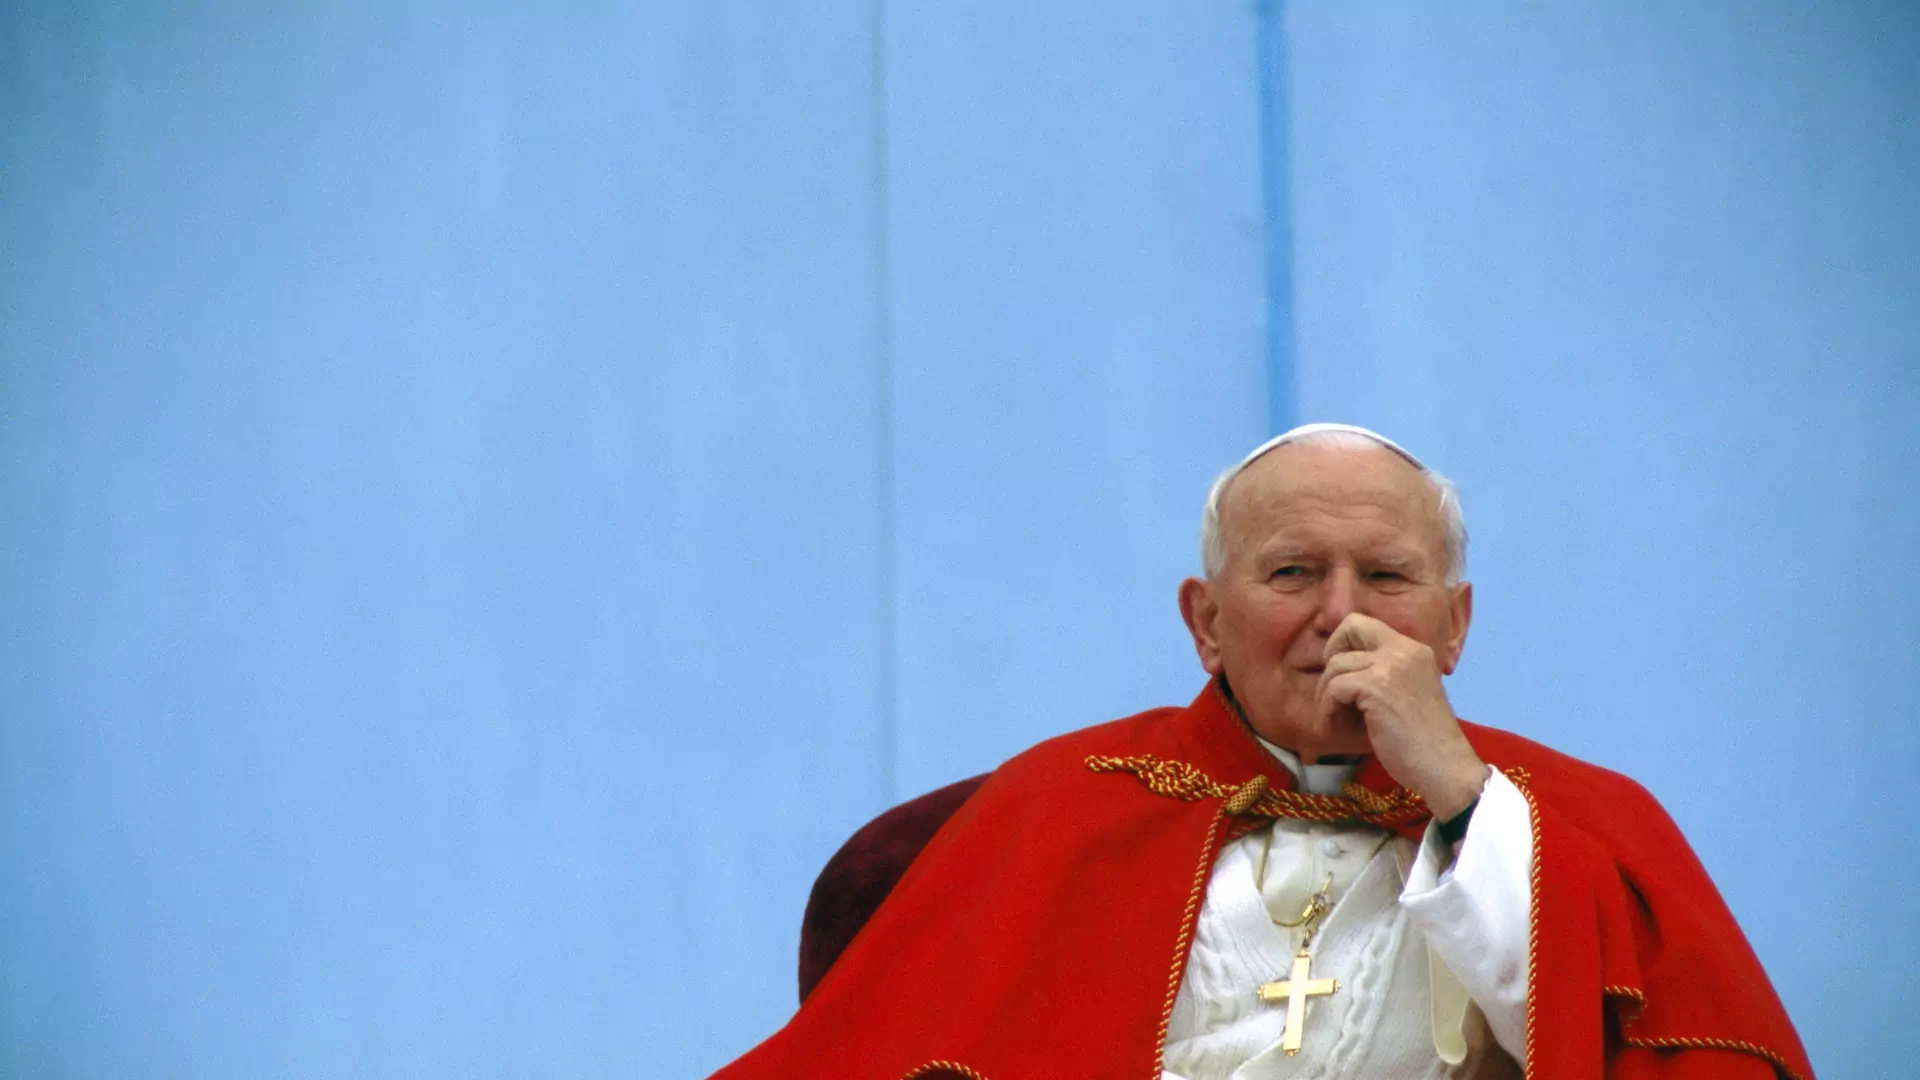 "Papież ten temat pomijał milczeniem". Przyjaciółki Jana Pawła II szczerze o sekretach Kościoła